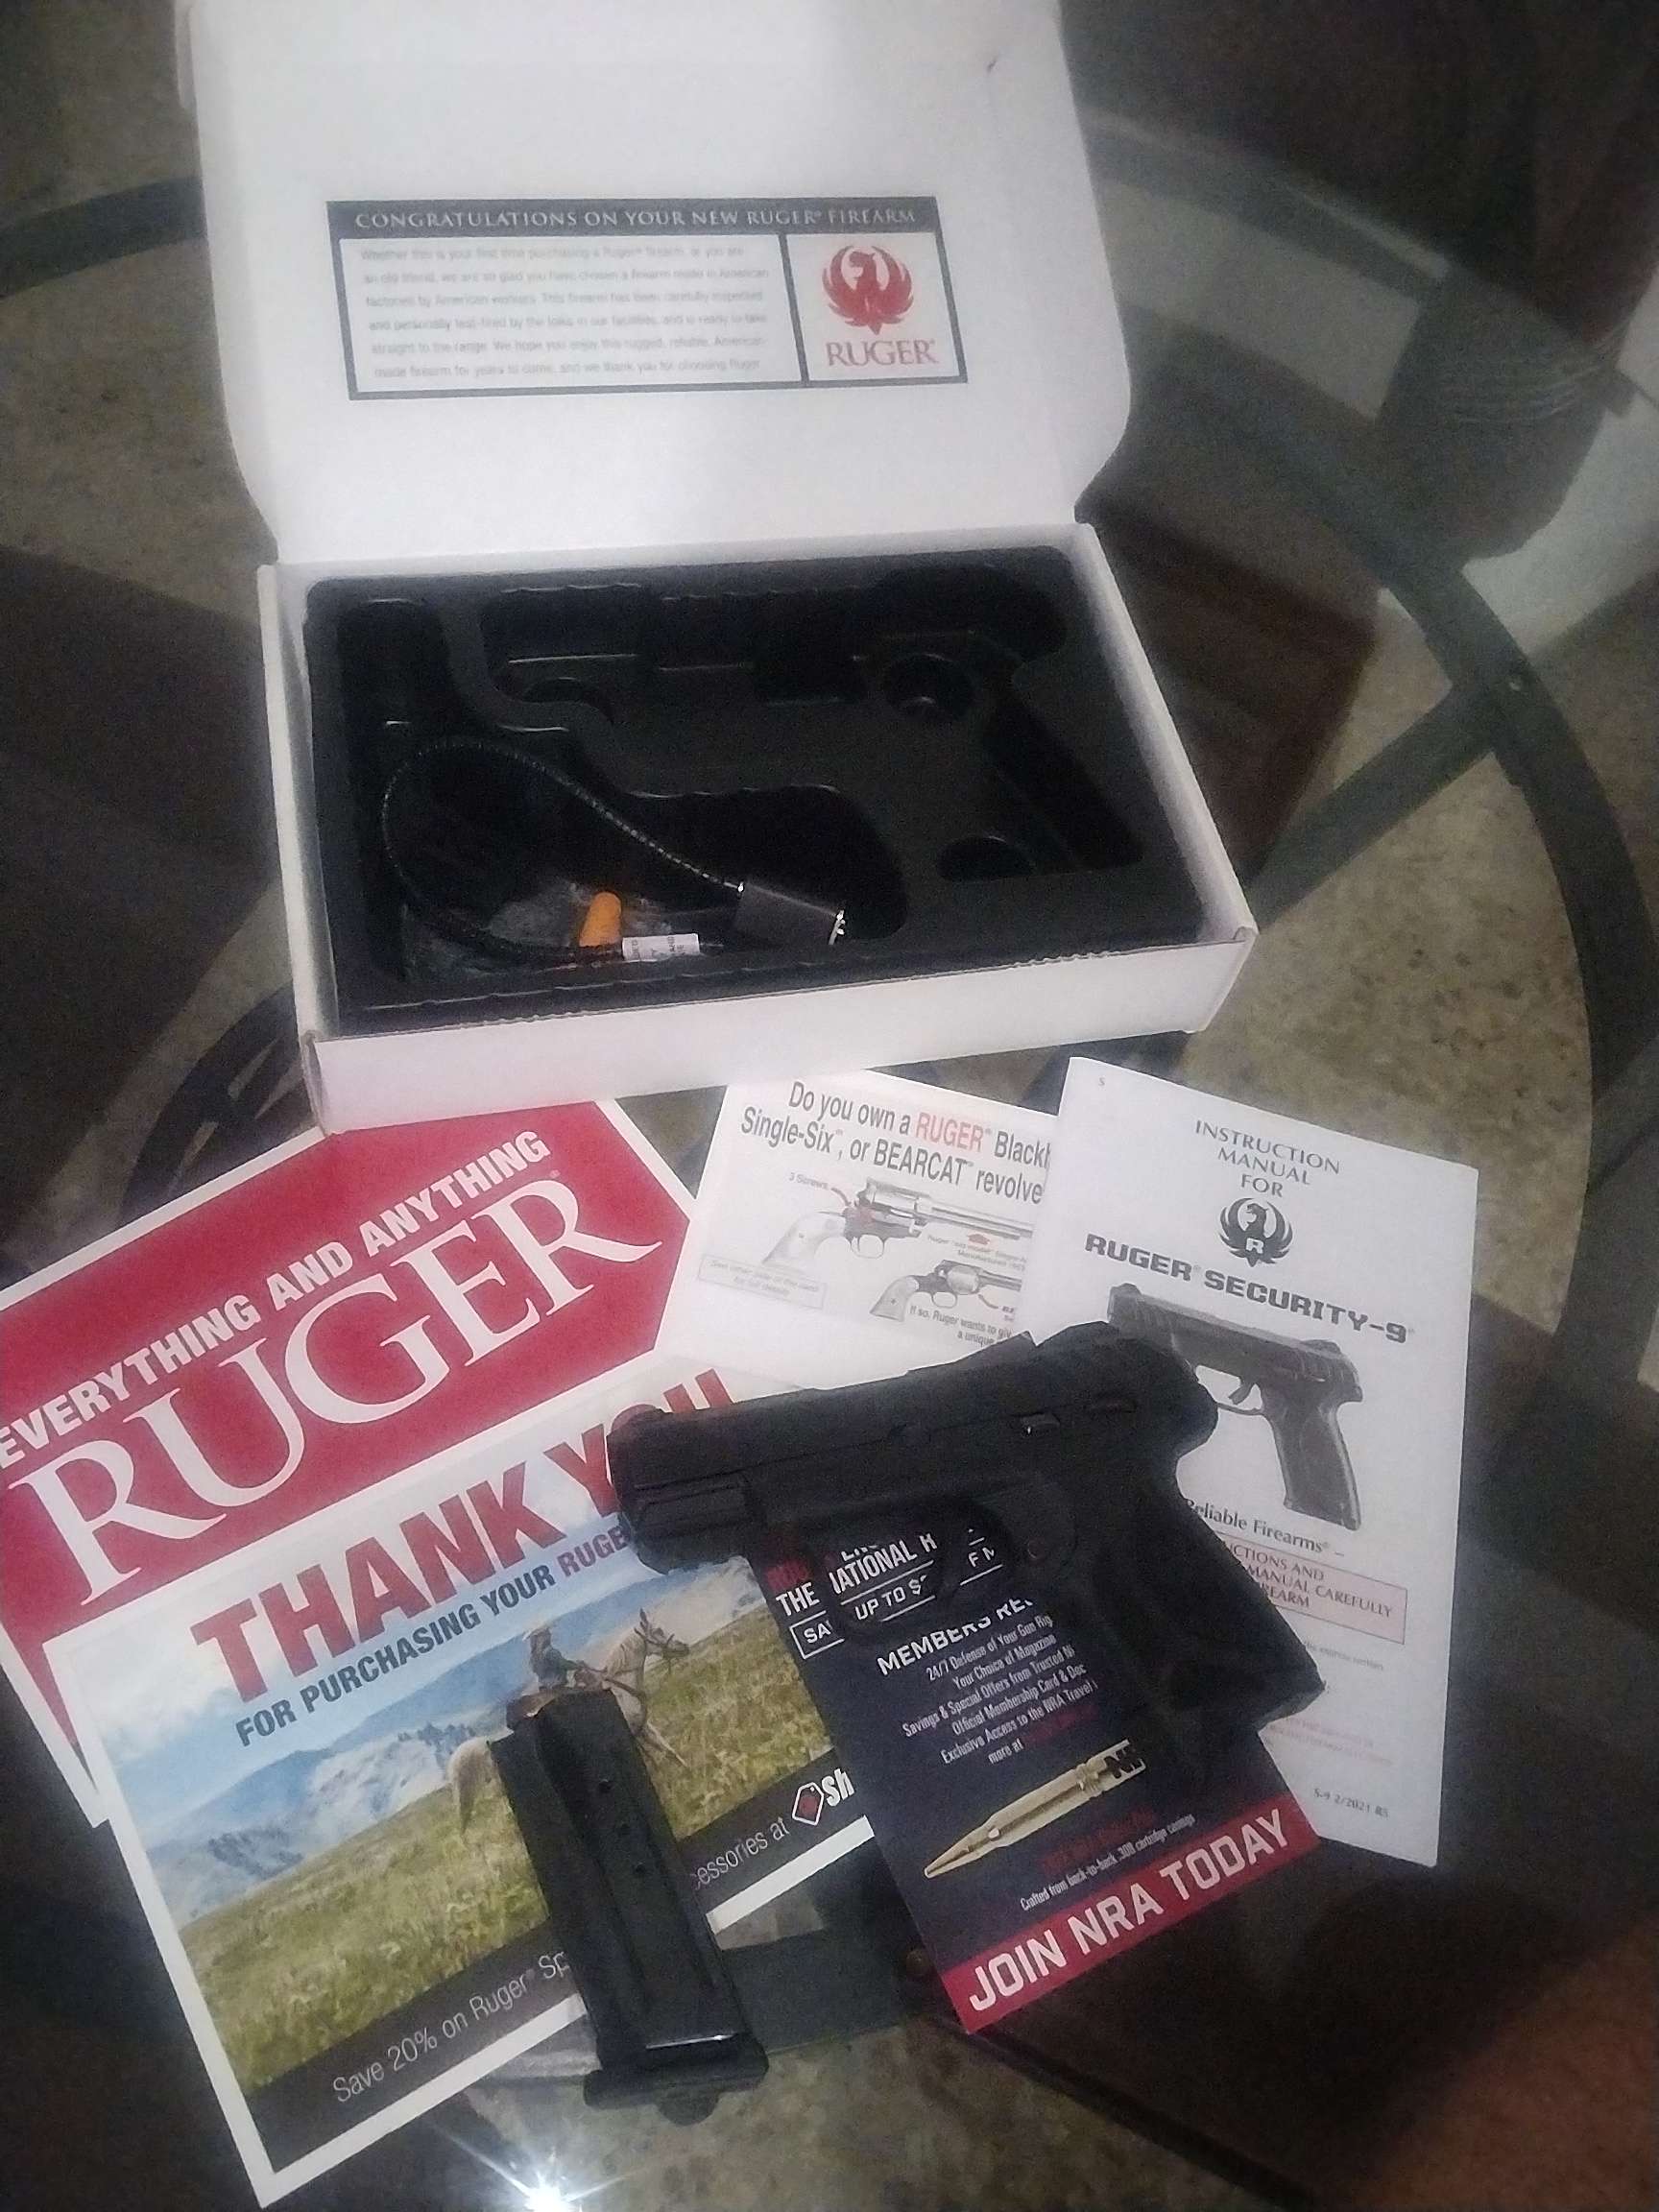 Ruger Security 9, Armas de fuego en PR